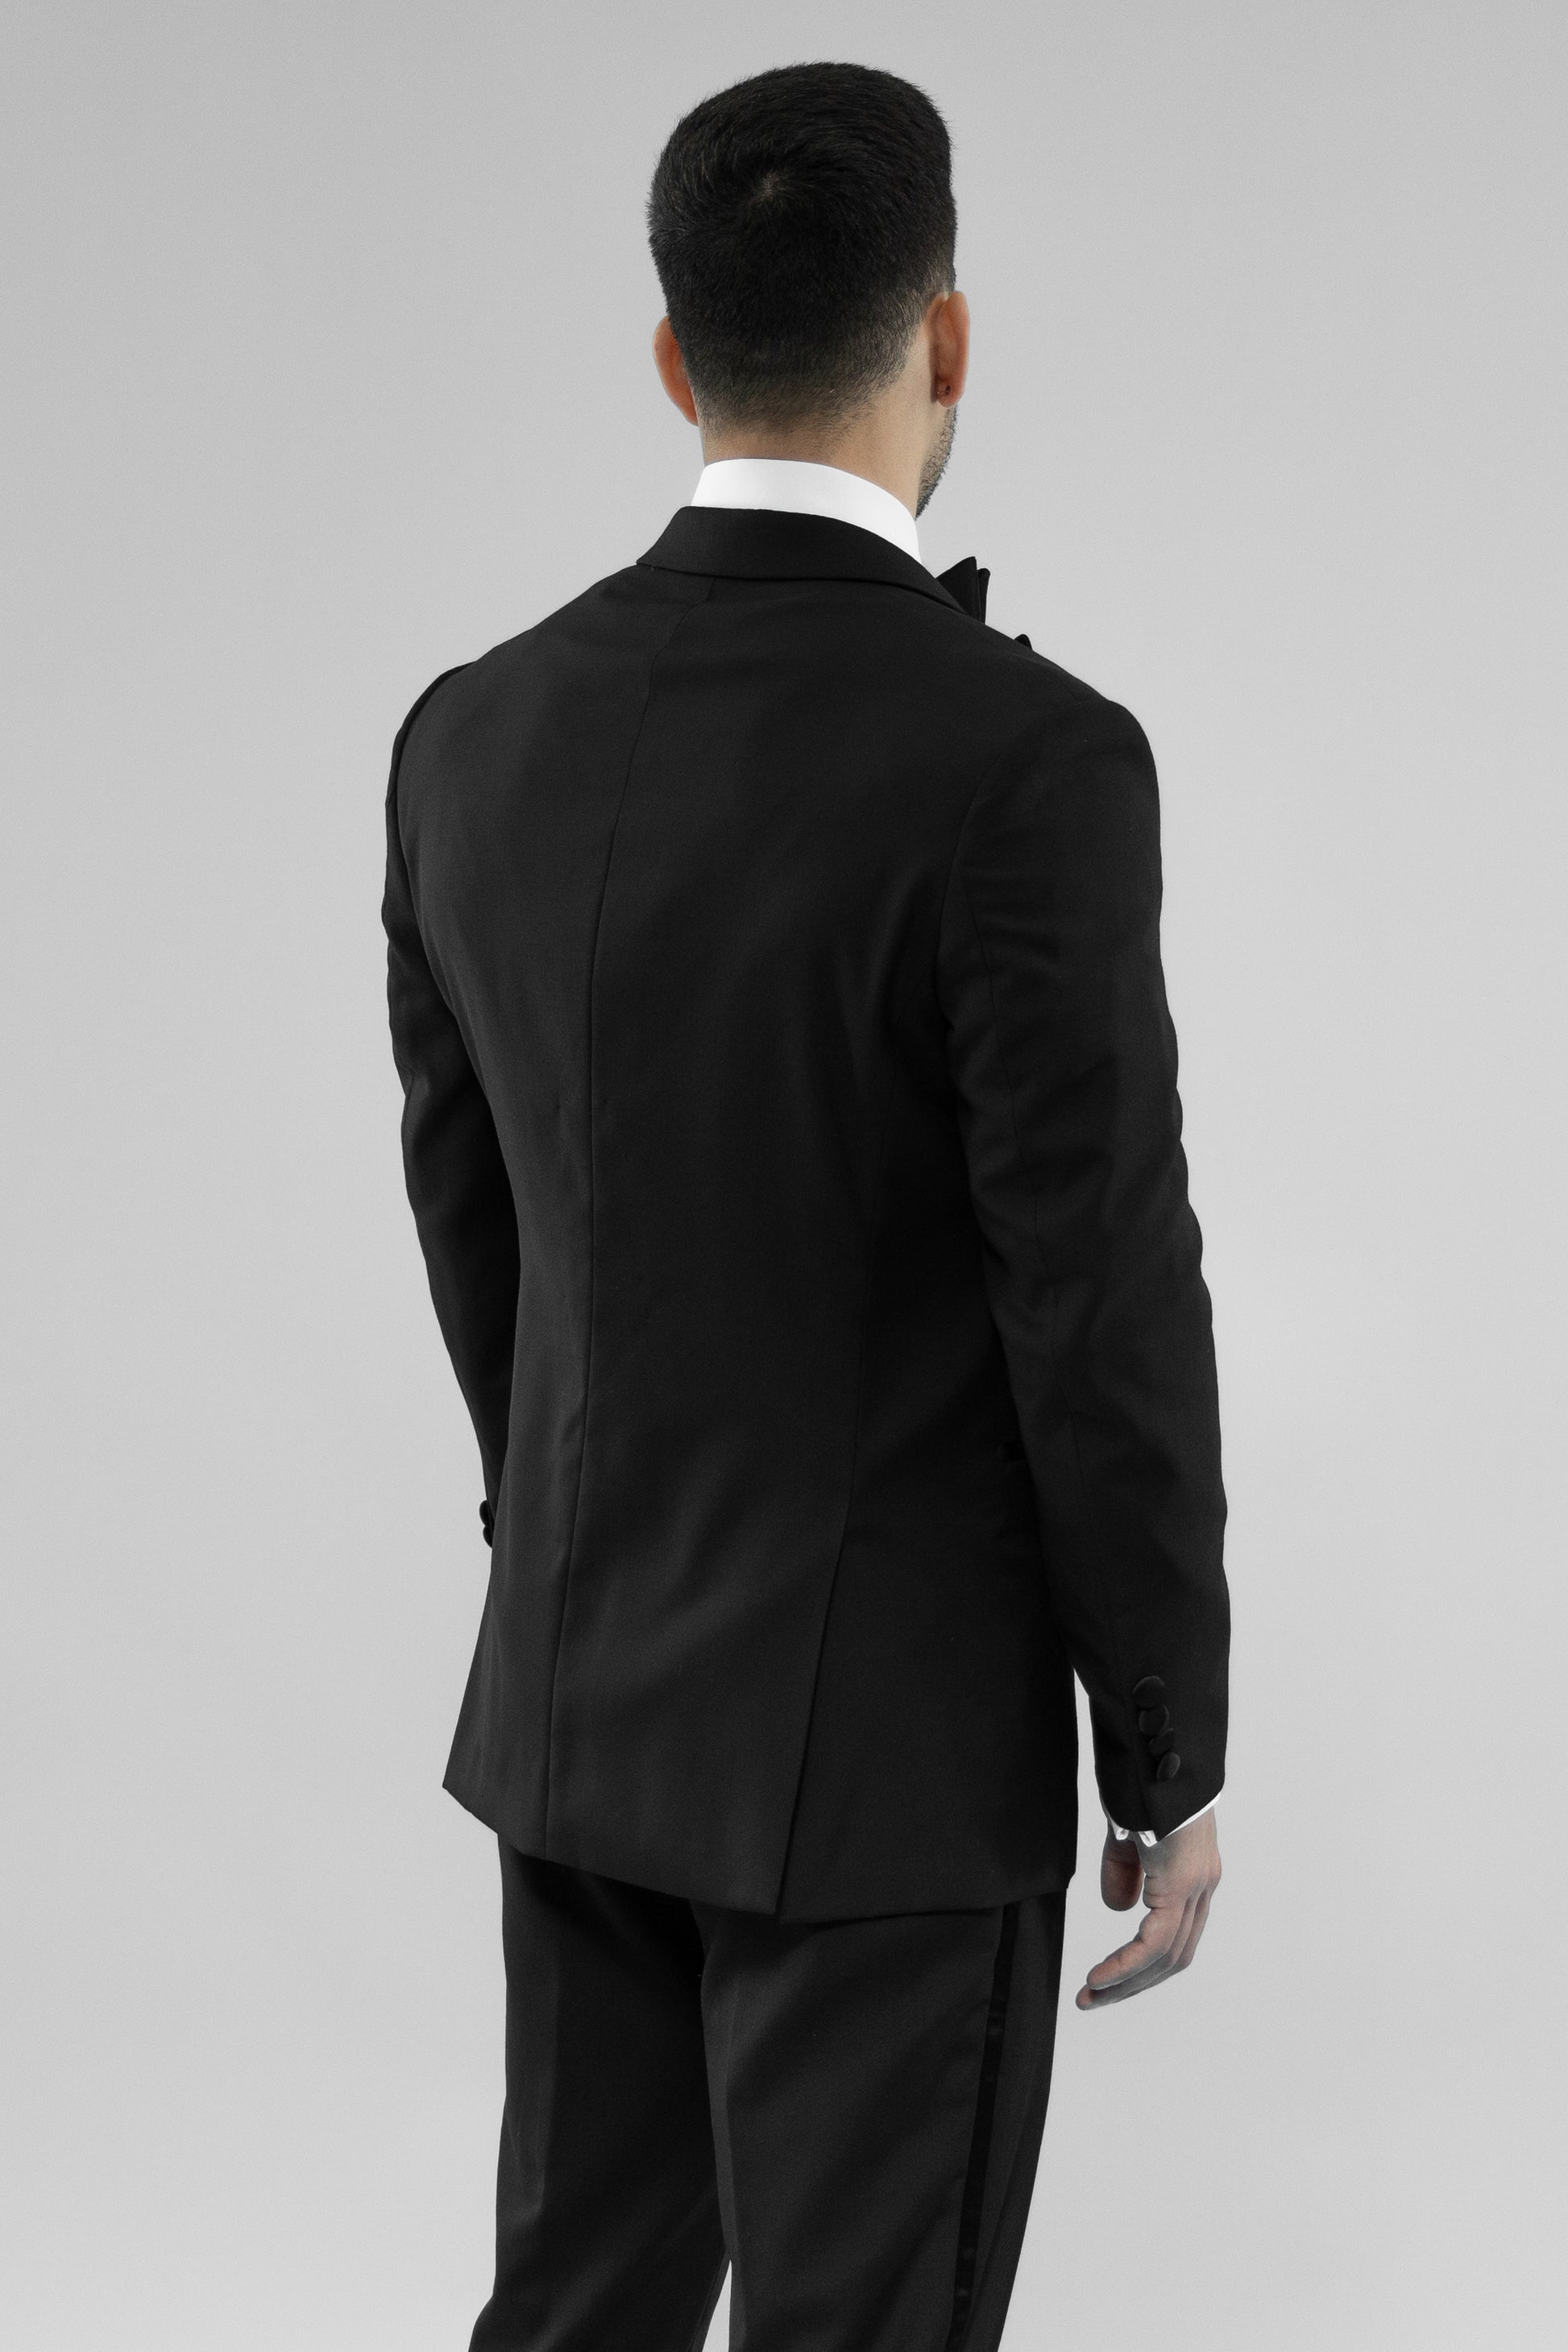 black tuxedo for online